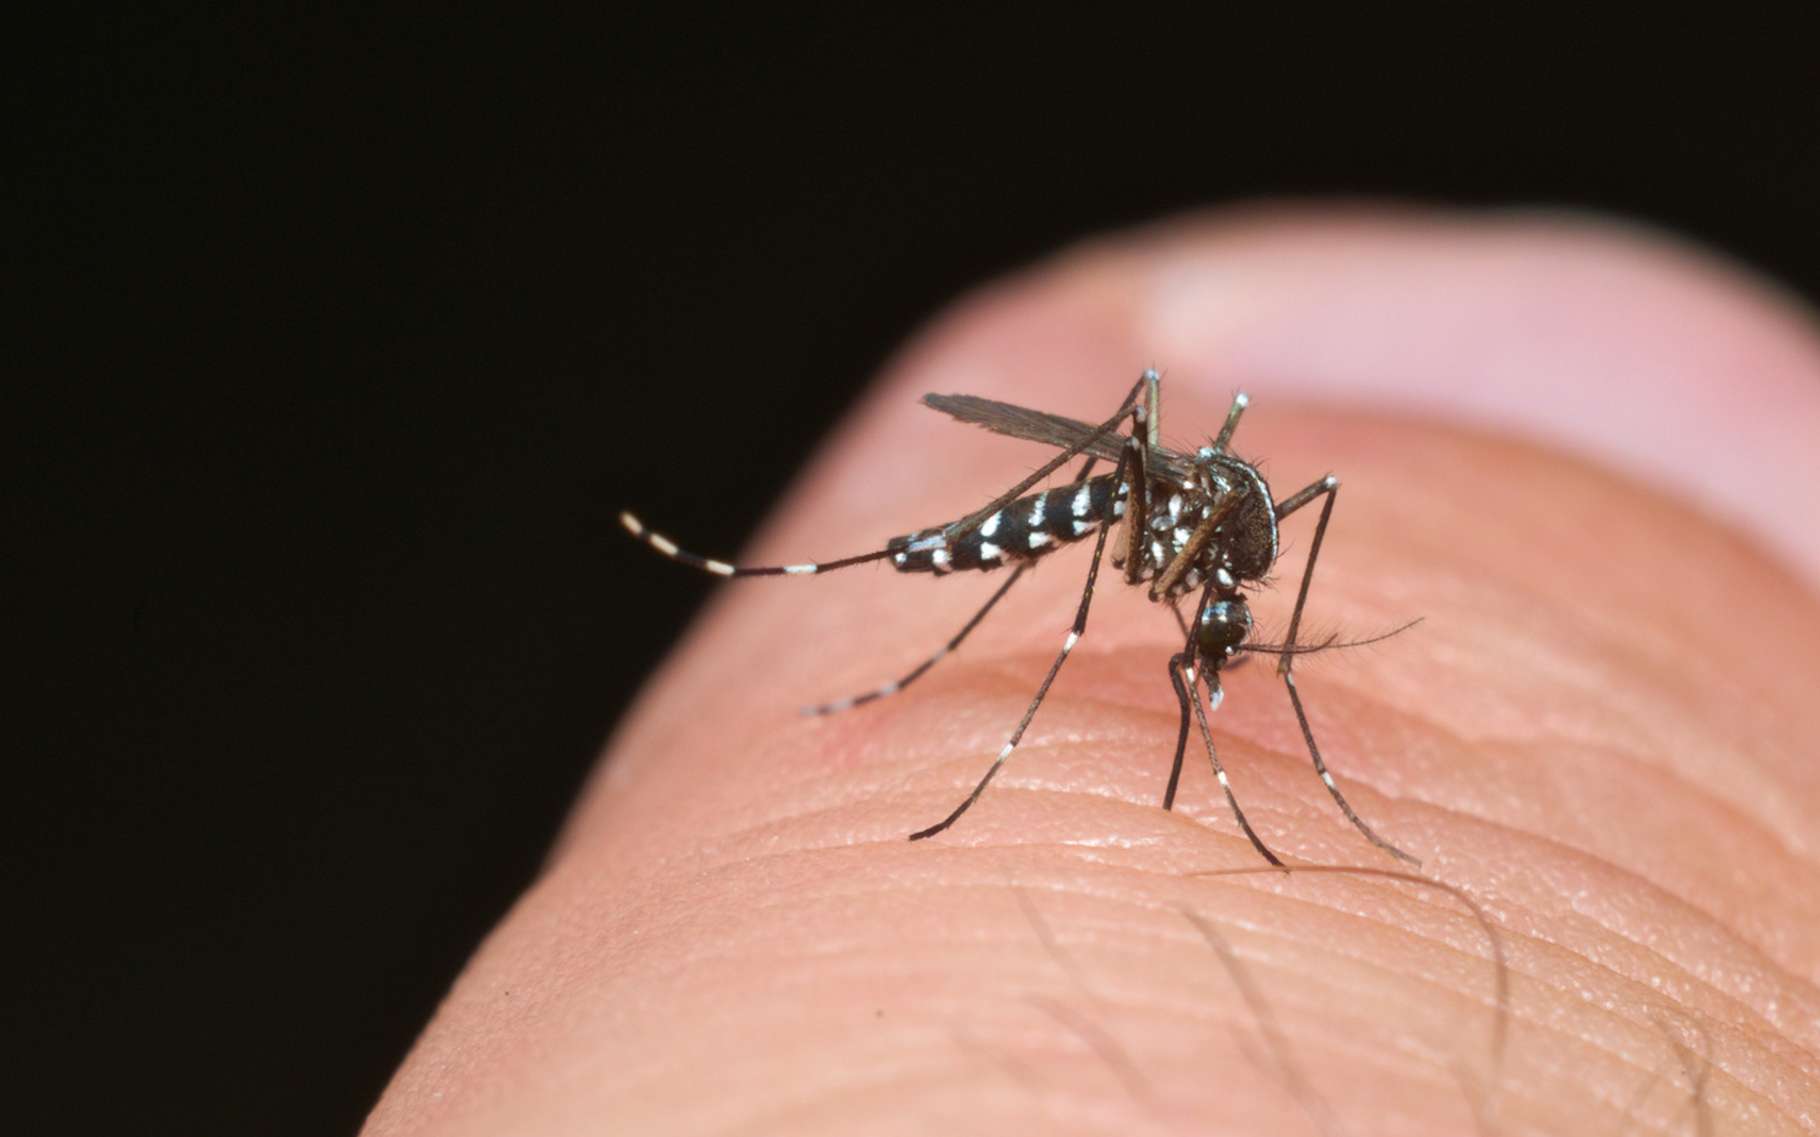     Les cas de dengue diminuent mais restent élevés 

